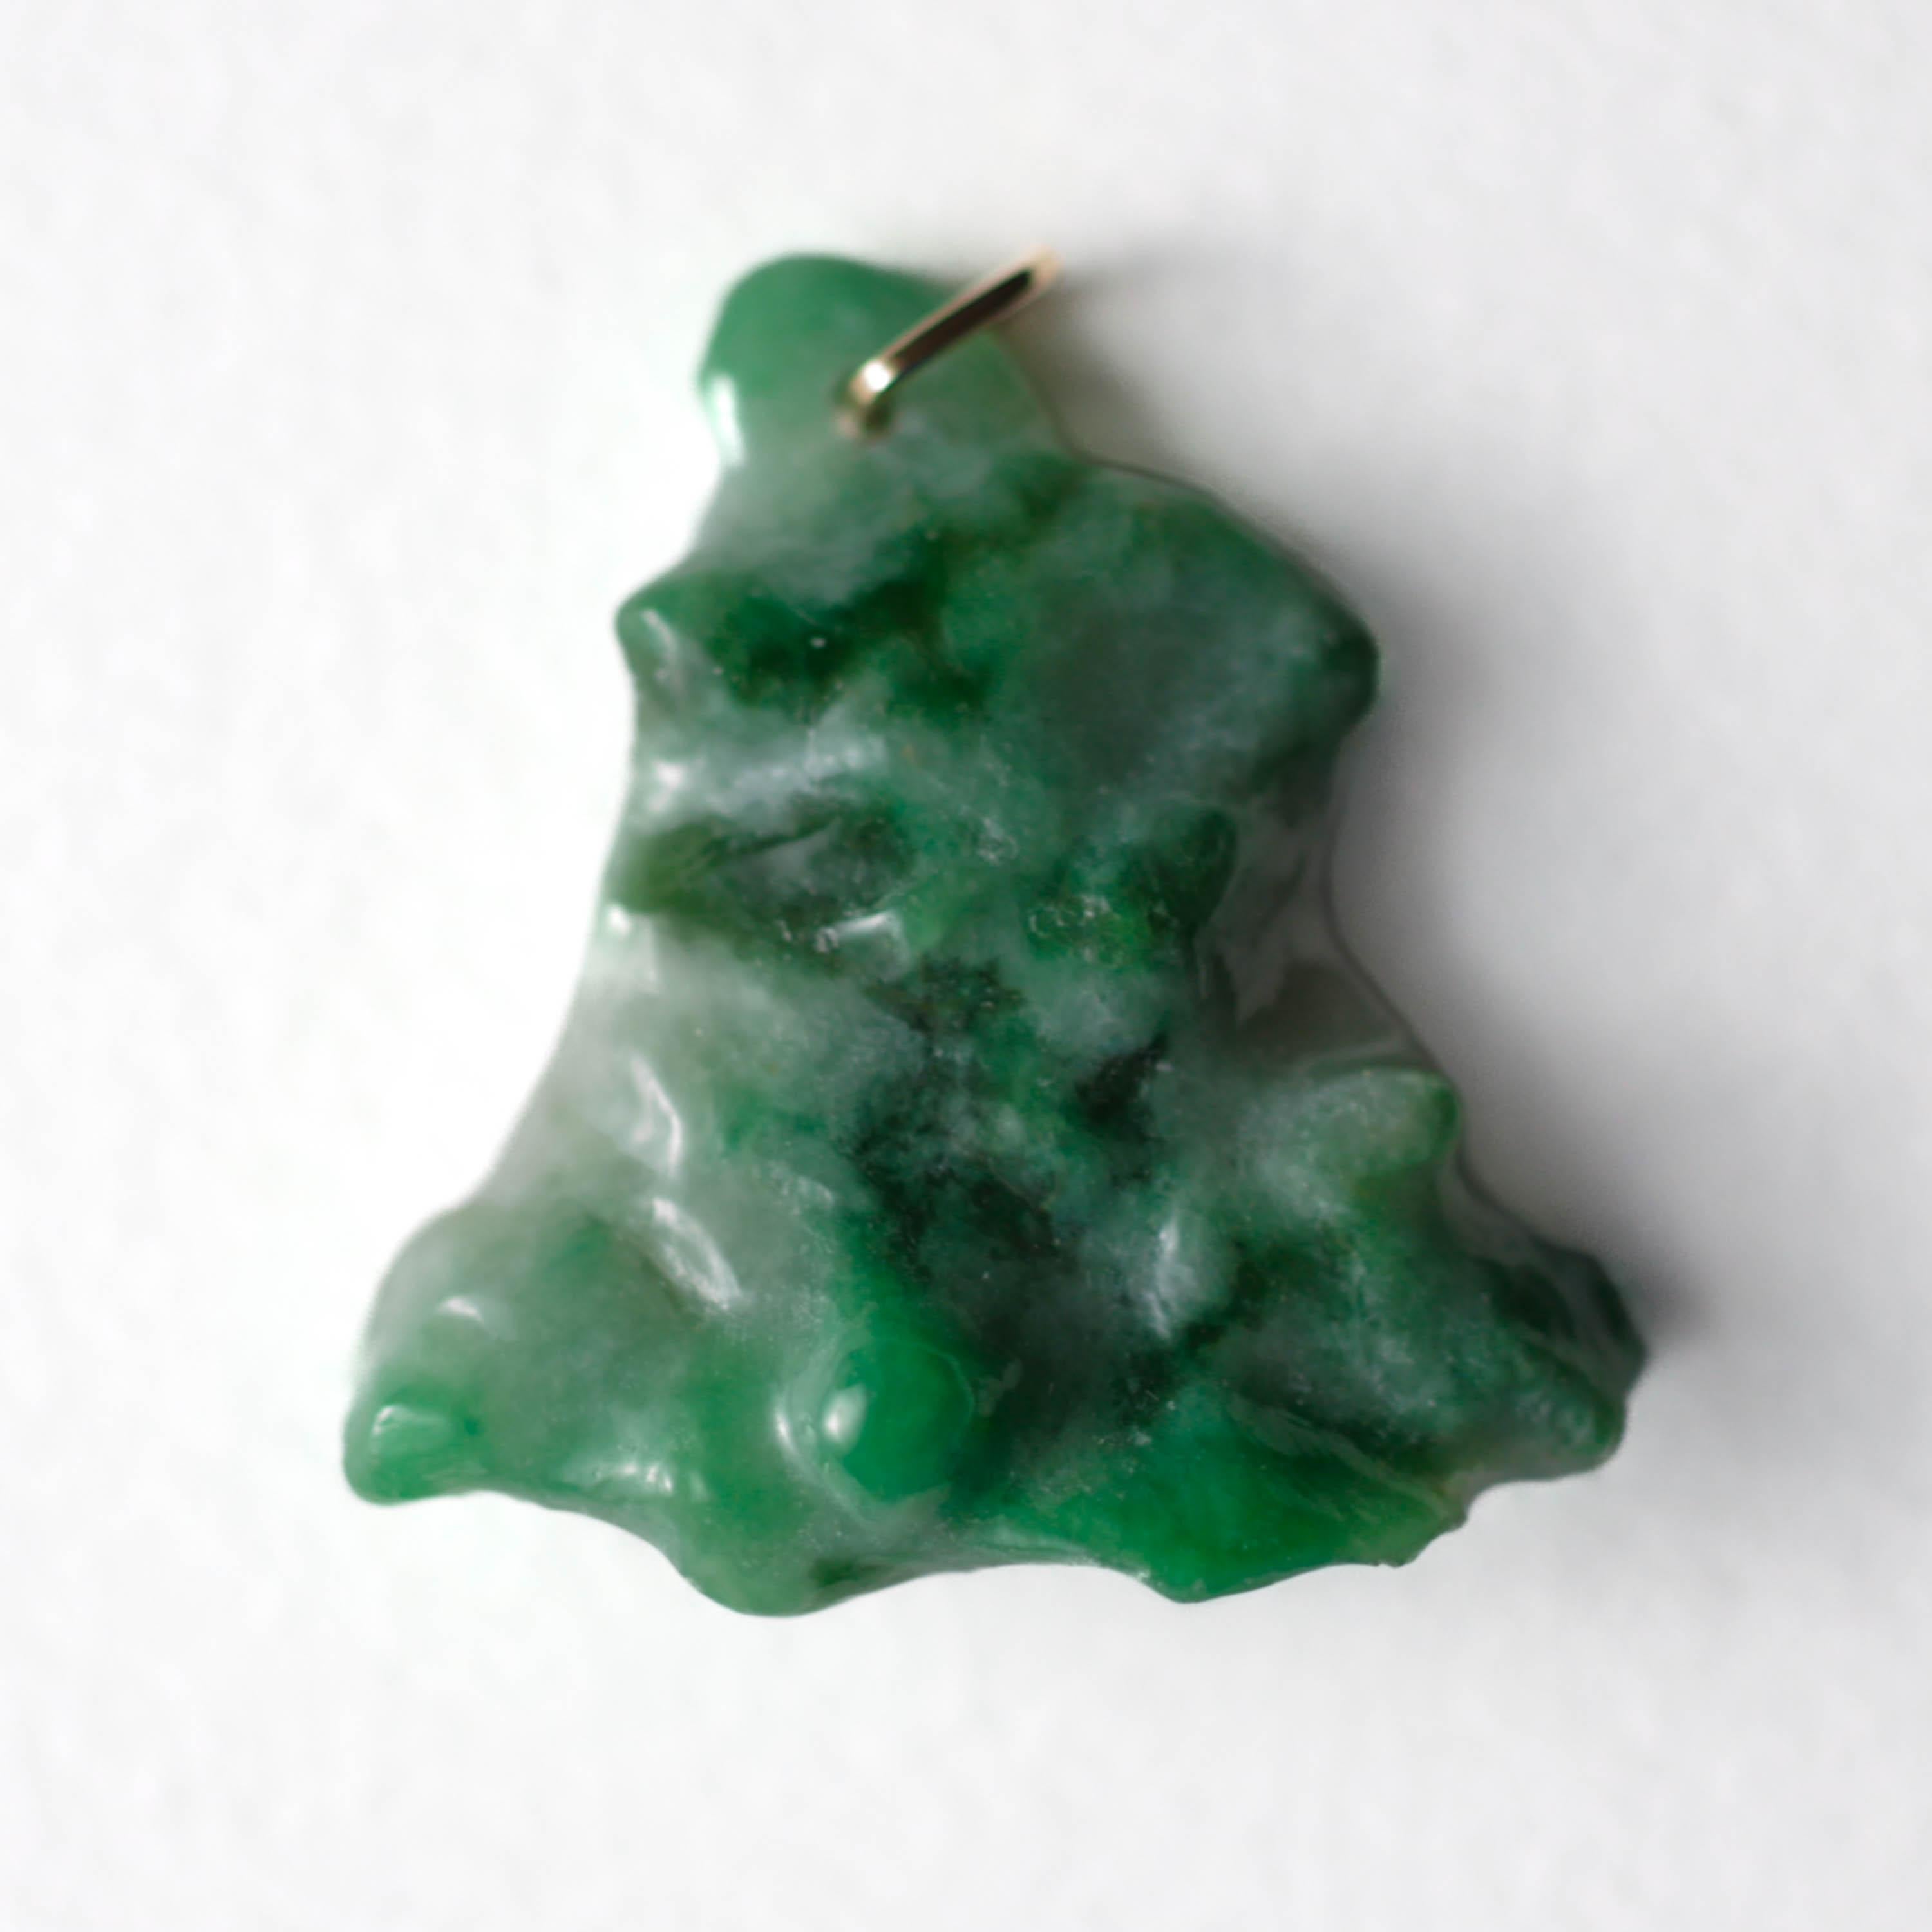 Dieser wunderschöne, smaragdgrün gesprenkelte, unbehandelte burmesische Jadeit-Jadestein wurde von Hand in eine dreieckige Form geschnitzt. Die Jade ist zwar undurchsichtig, aber auch sehr lichtdurchlässig, so dass sie unter allen Lichtverhältnissen